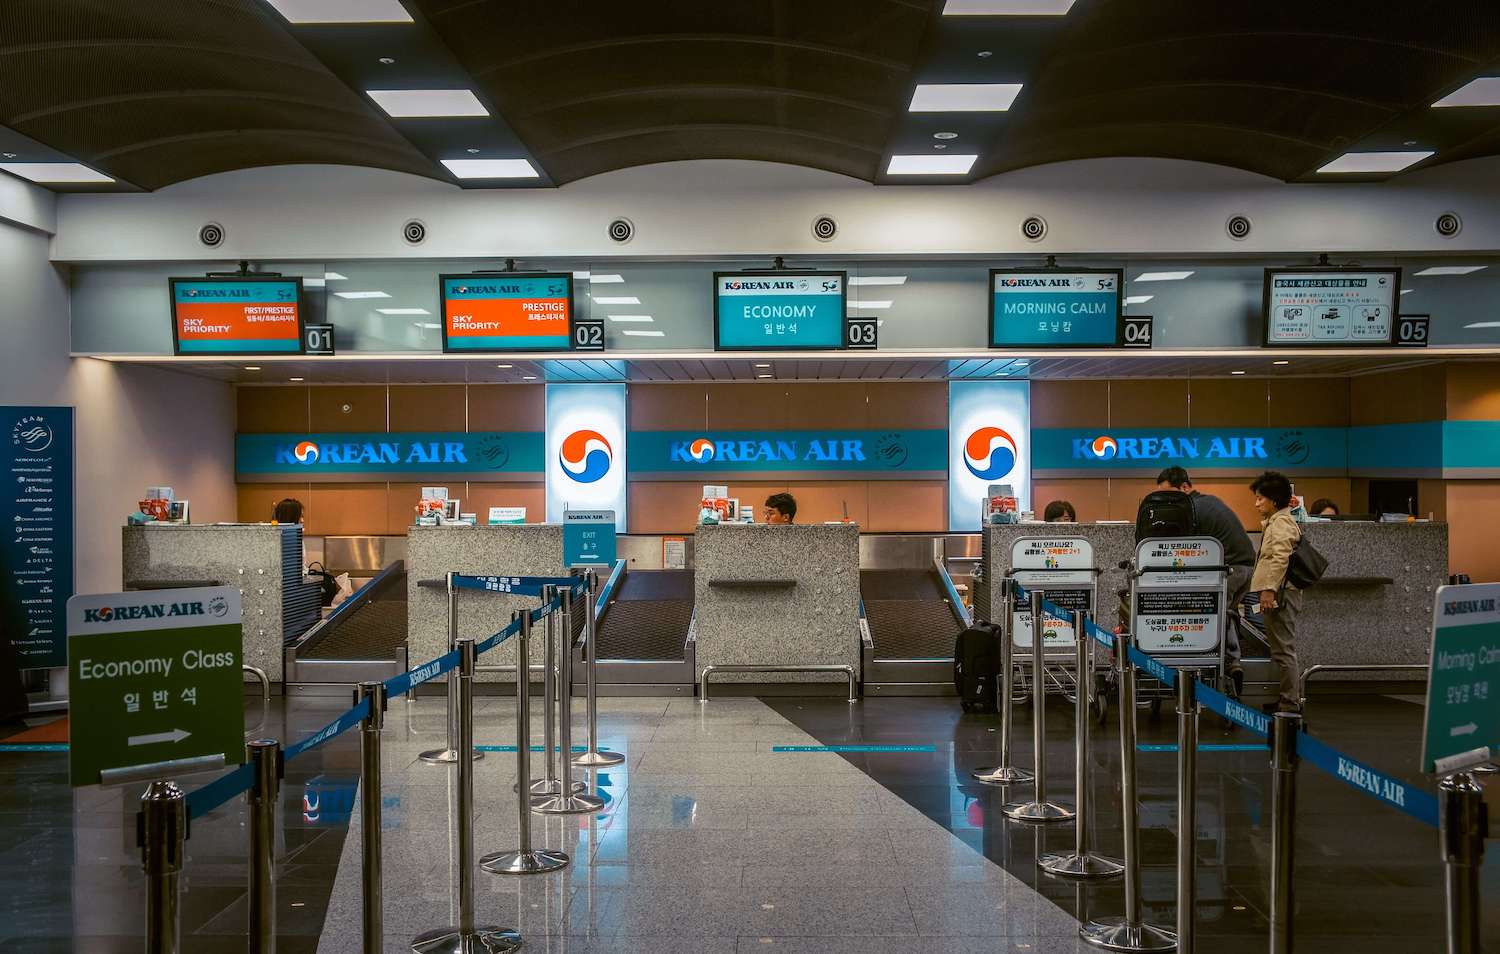 korean air check-in desk at city air terminal in seoul korea